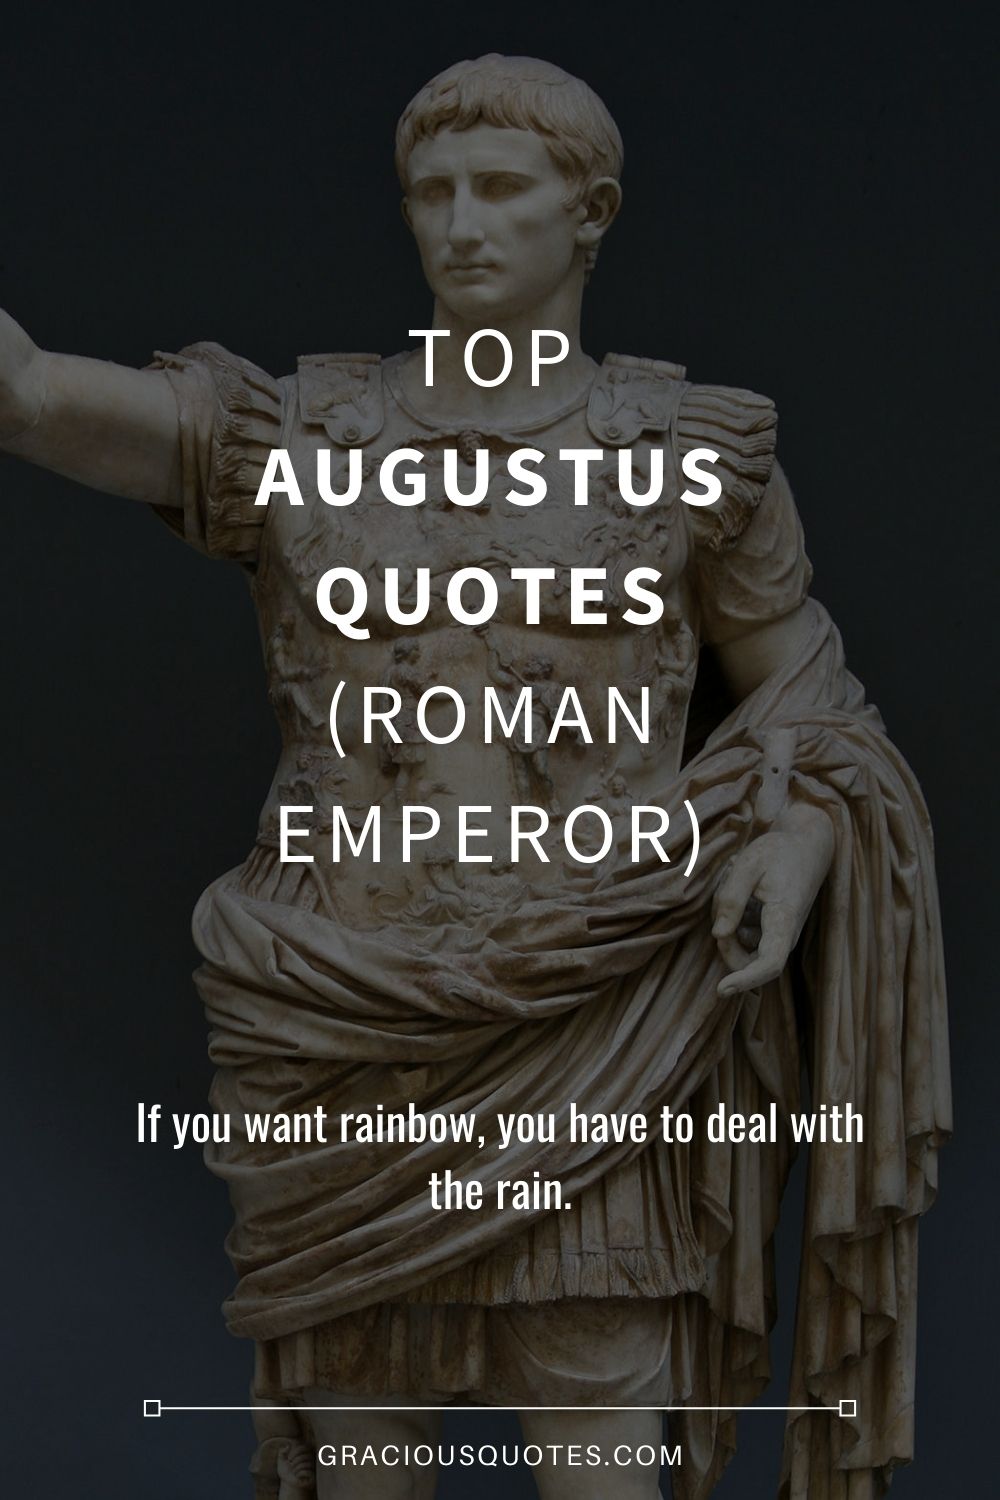 Top Augustus Quotes (ROMAN EMPEROR) - Gracious Quotes